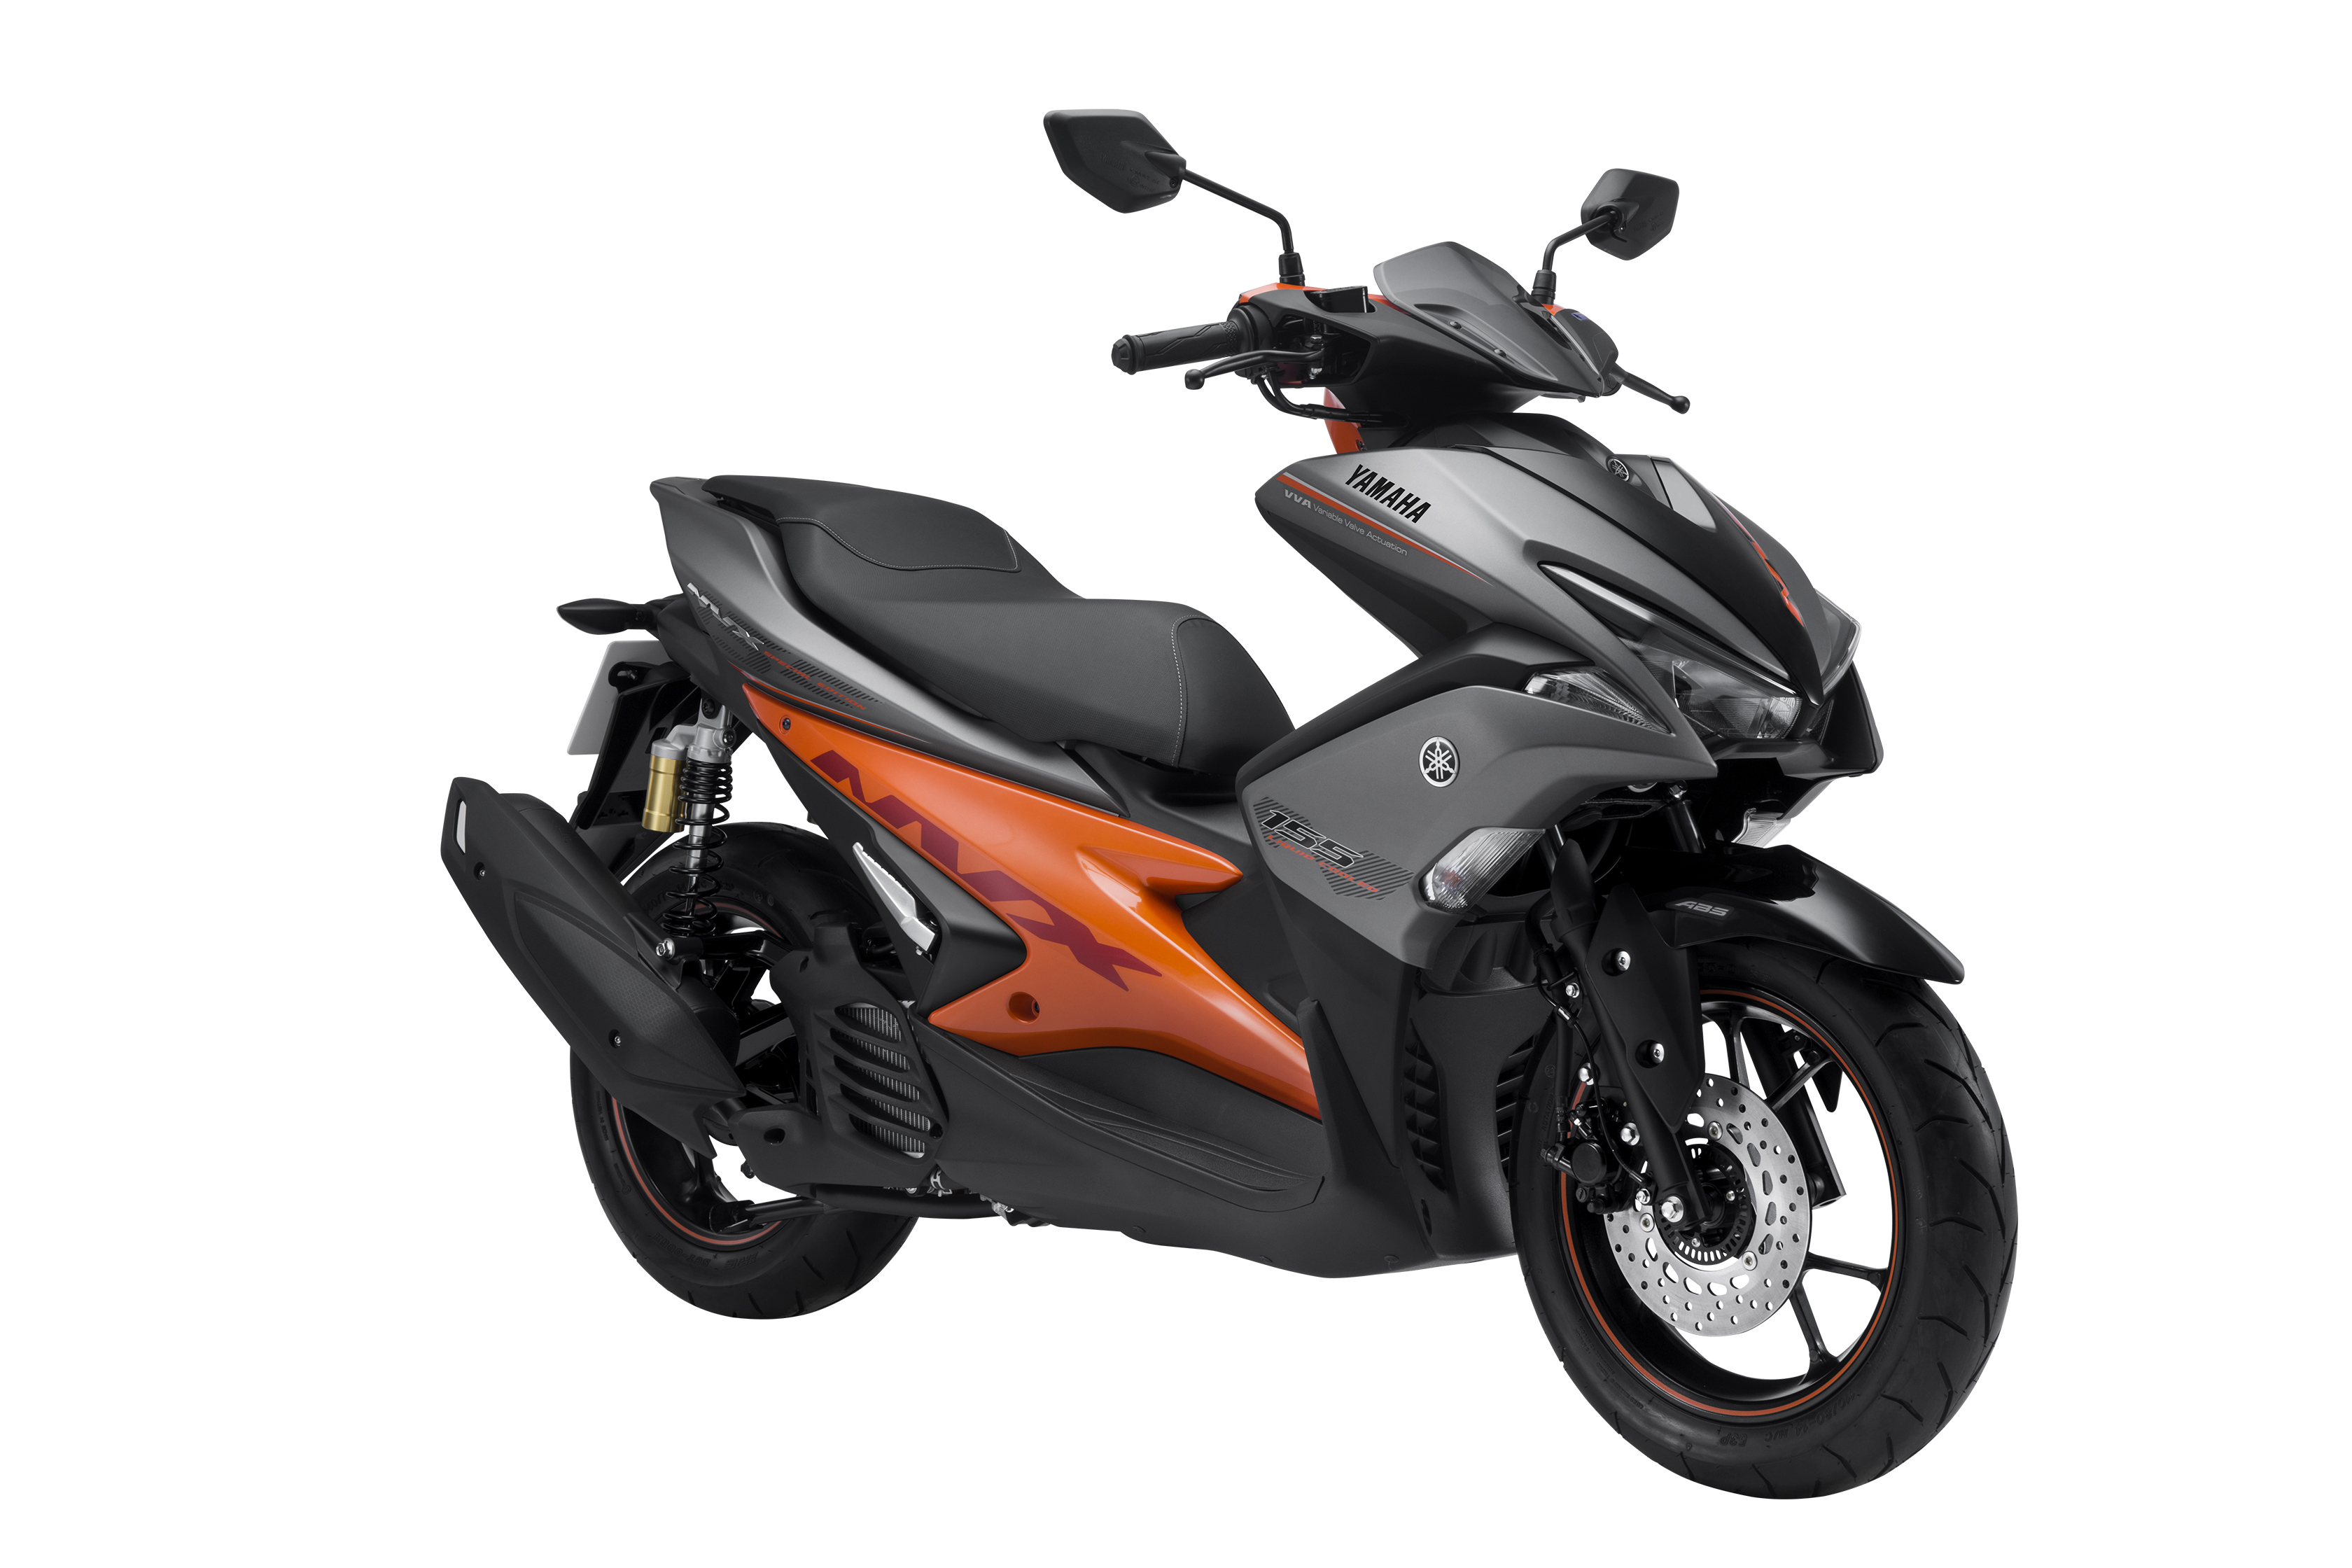 NVX lột xác với phiên bản màu mới cực cá tính - Yamaha Motor Việt Nam